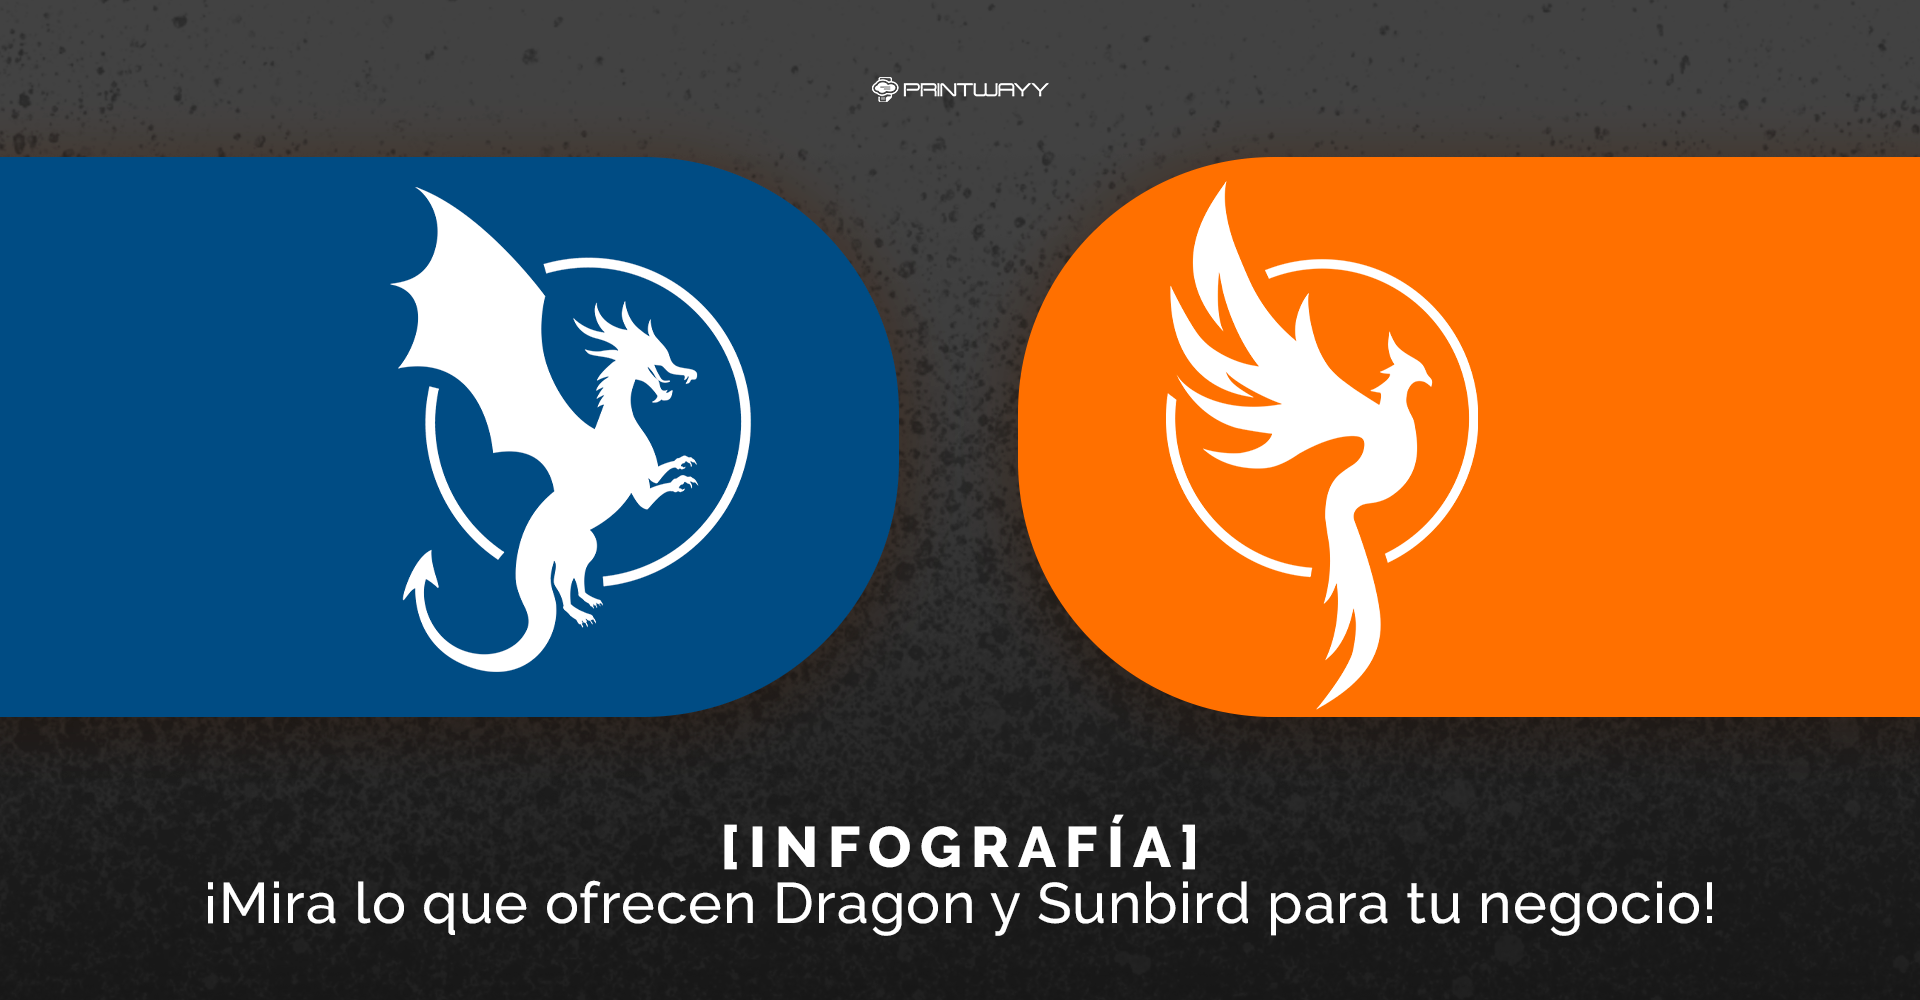 Logotipo de dos productos PrintWayy, Dragon y Sunbird.